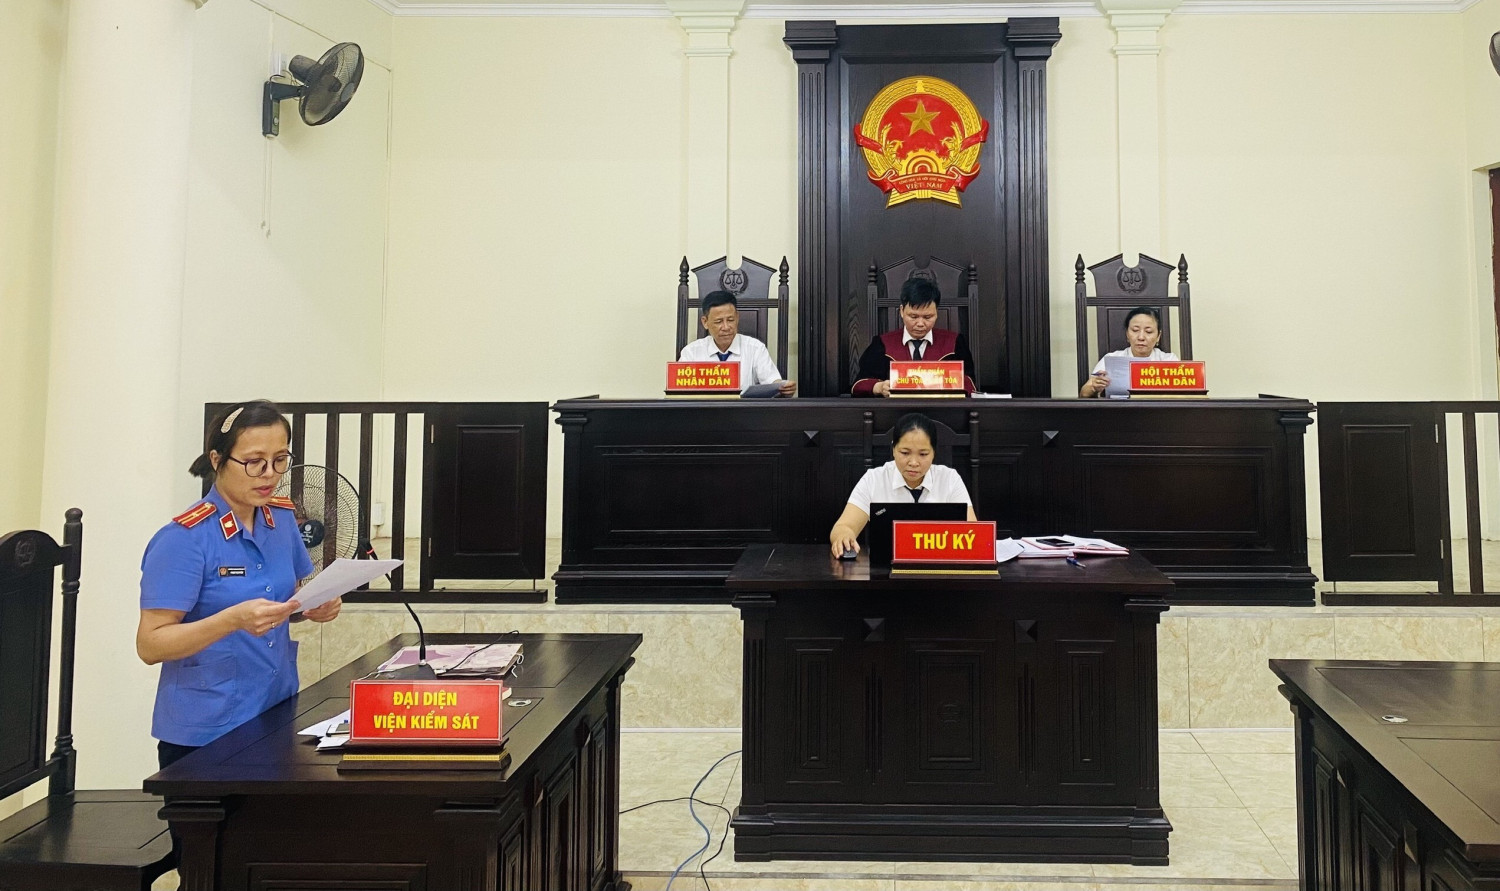 Toà án nhân dân huyện Thanh Hà tổ chức xét xử phiên toà trực tuyến